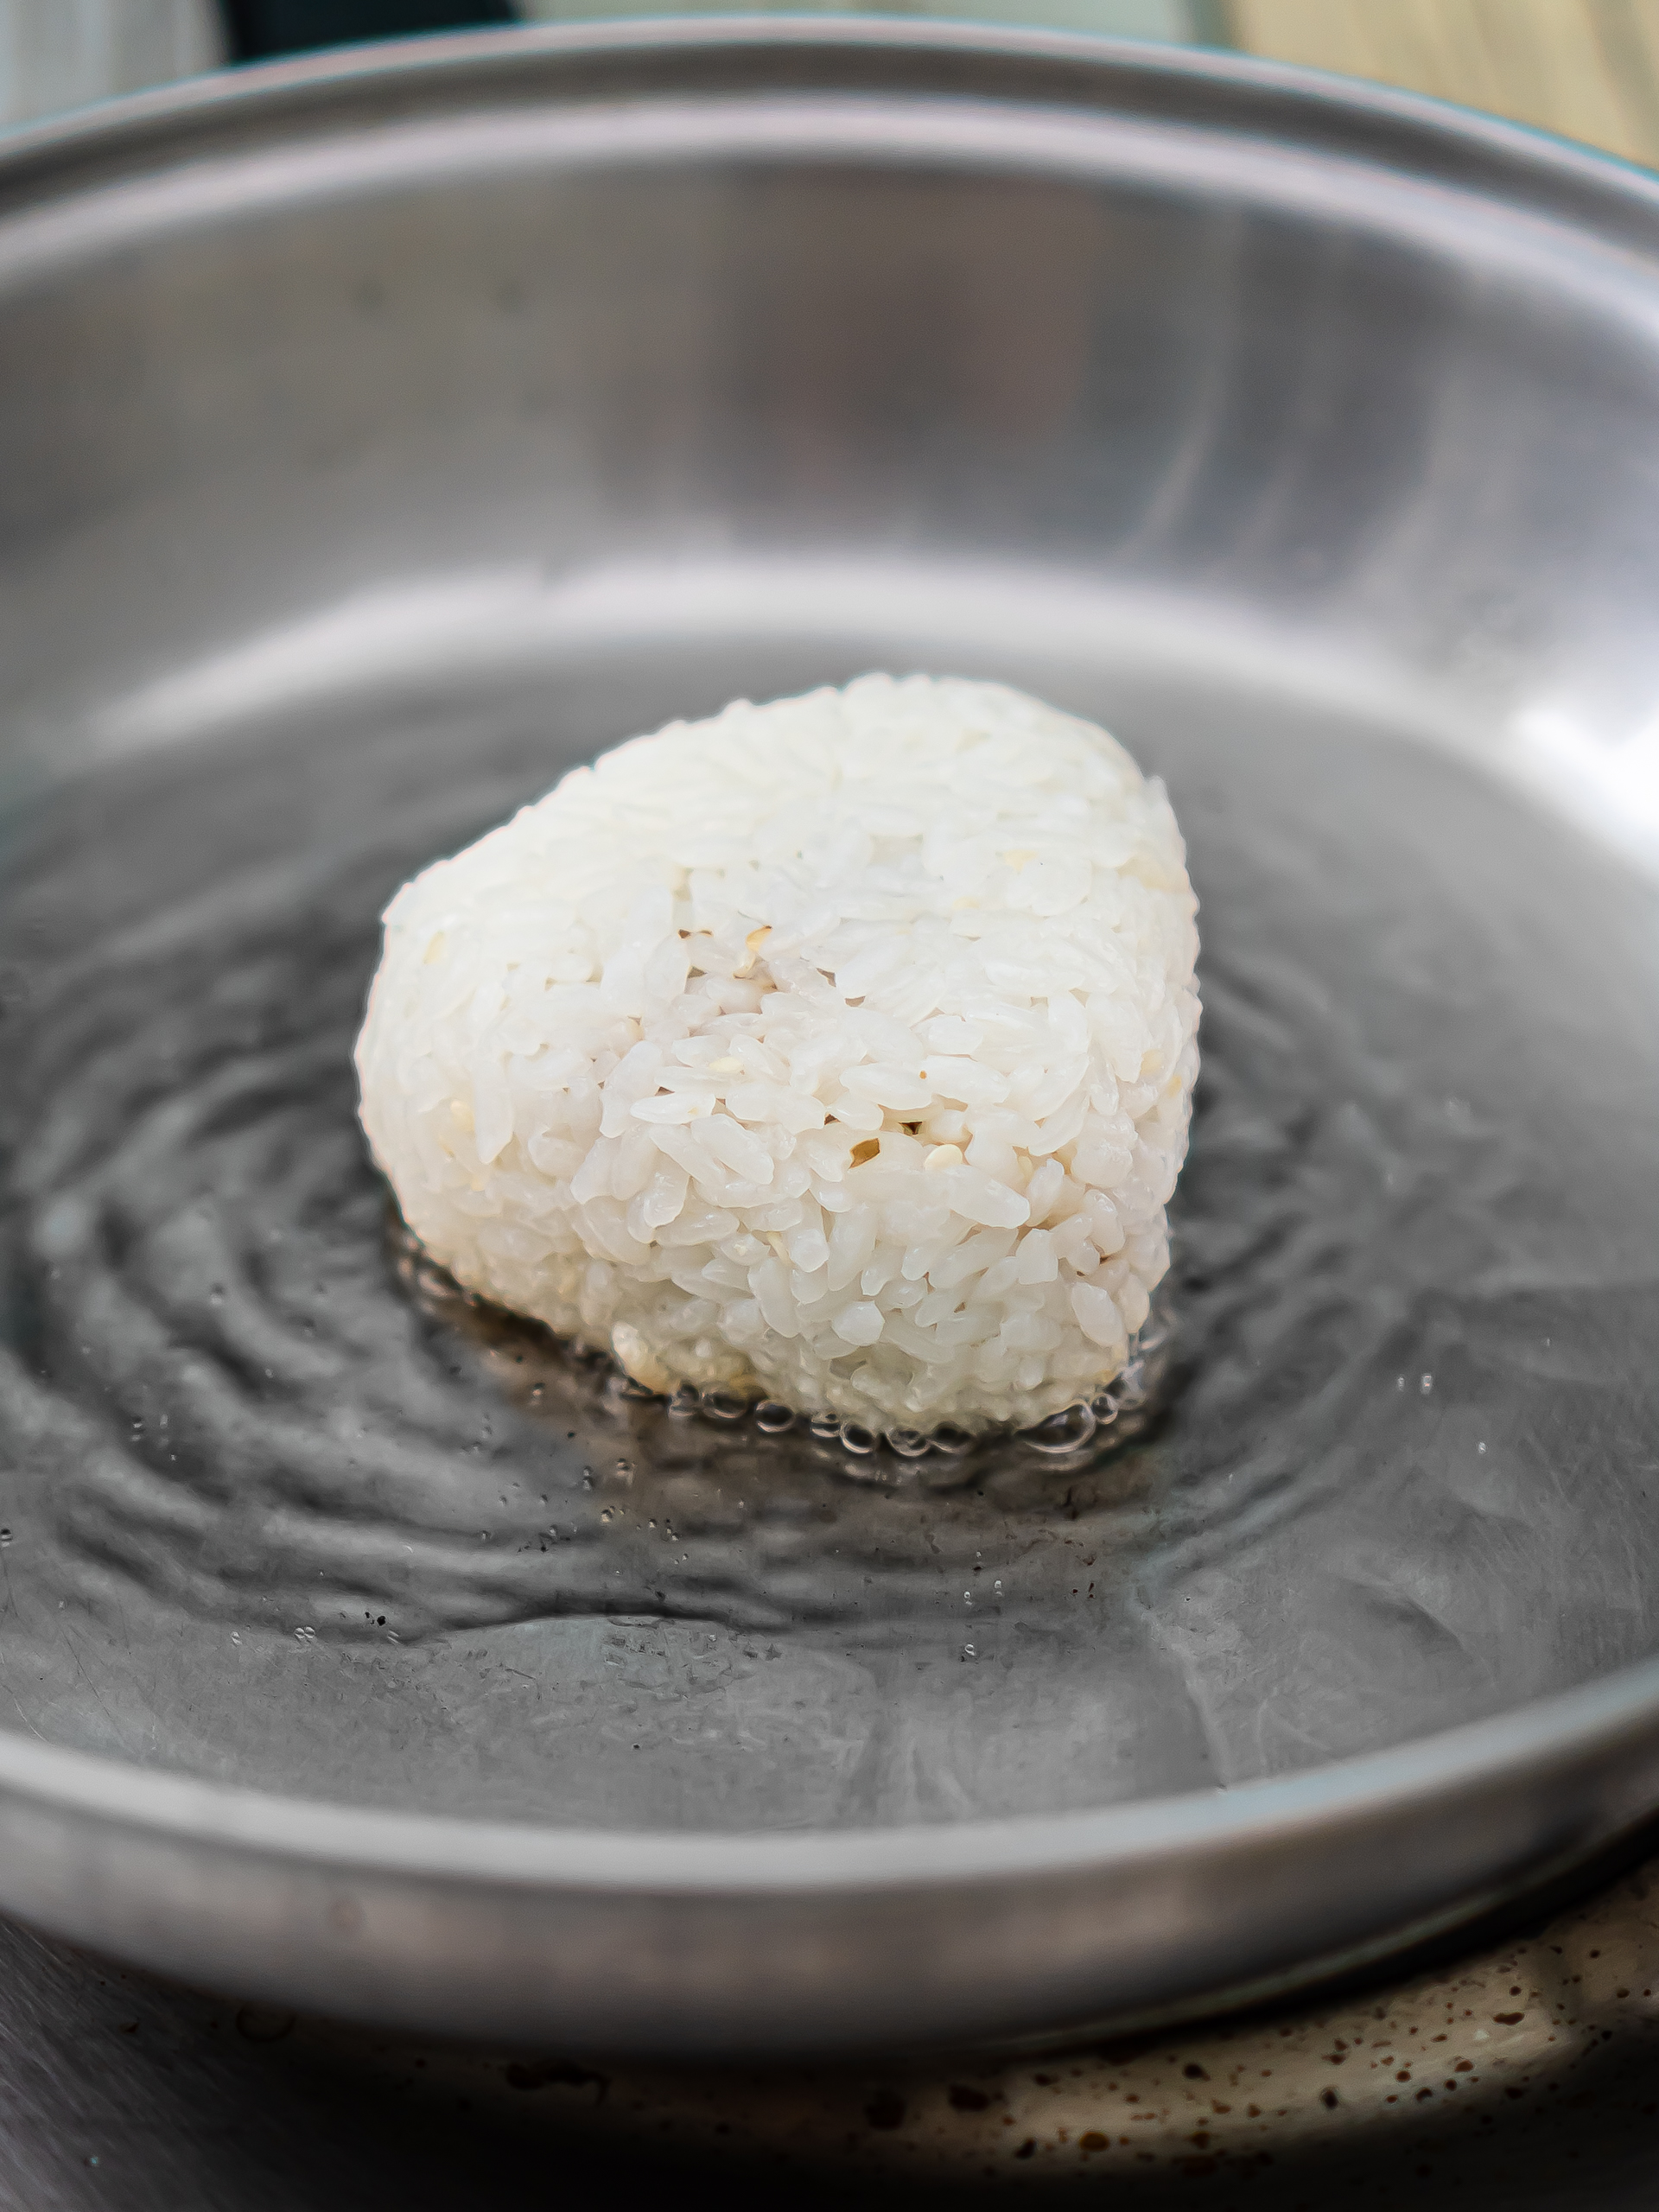 yaki onigiri rice balls cooking in oil